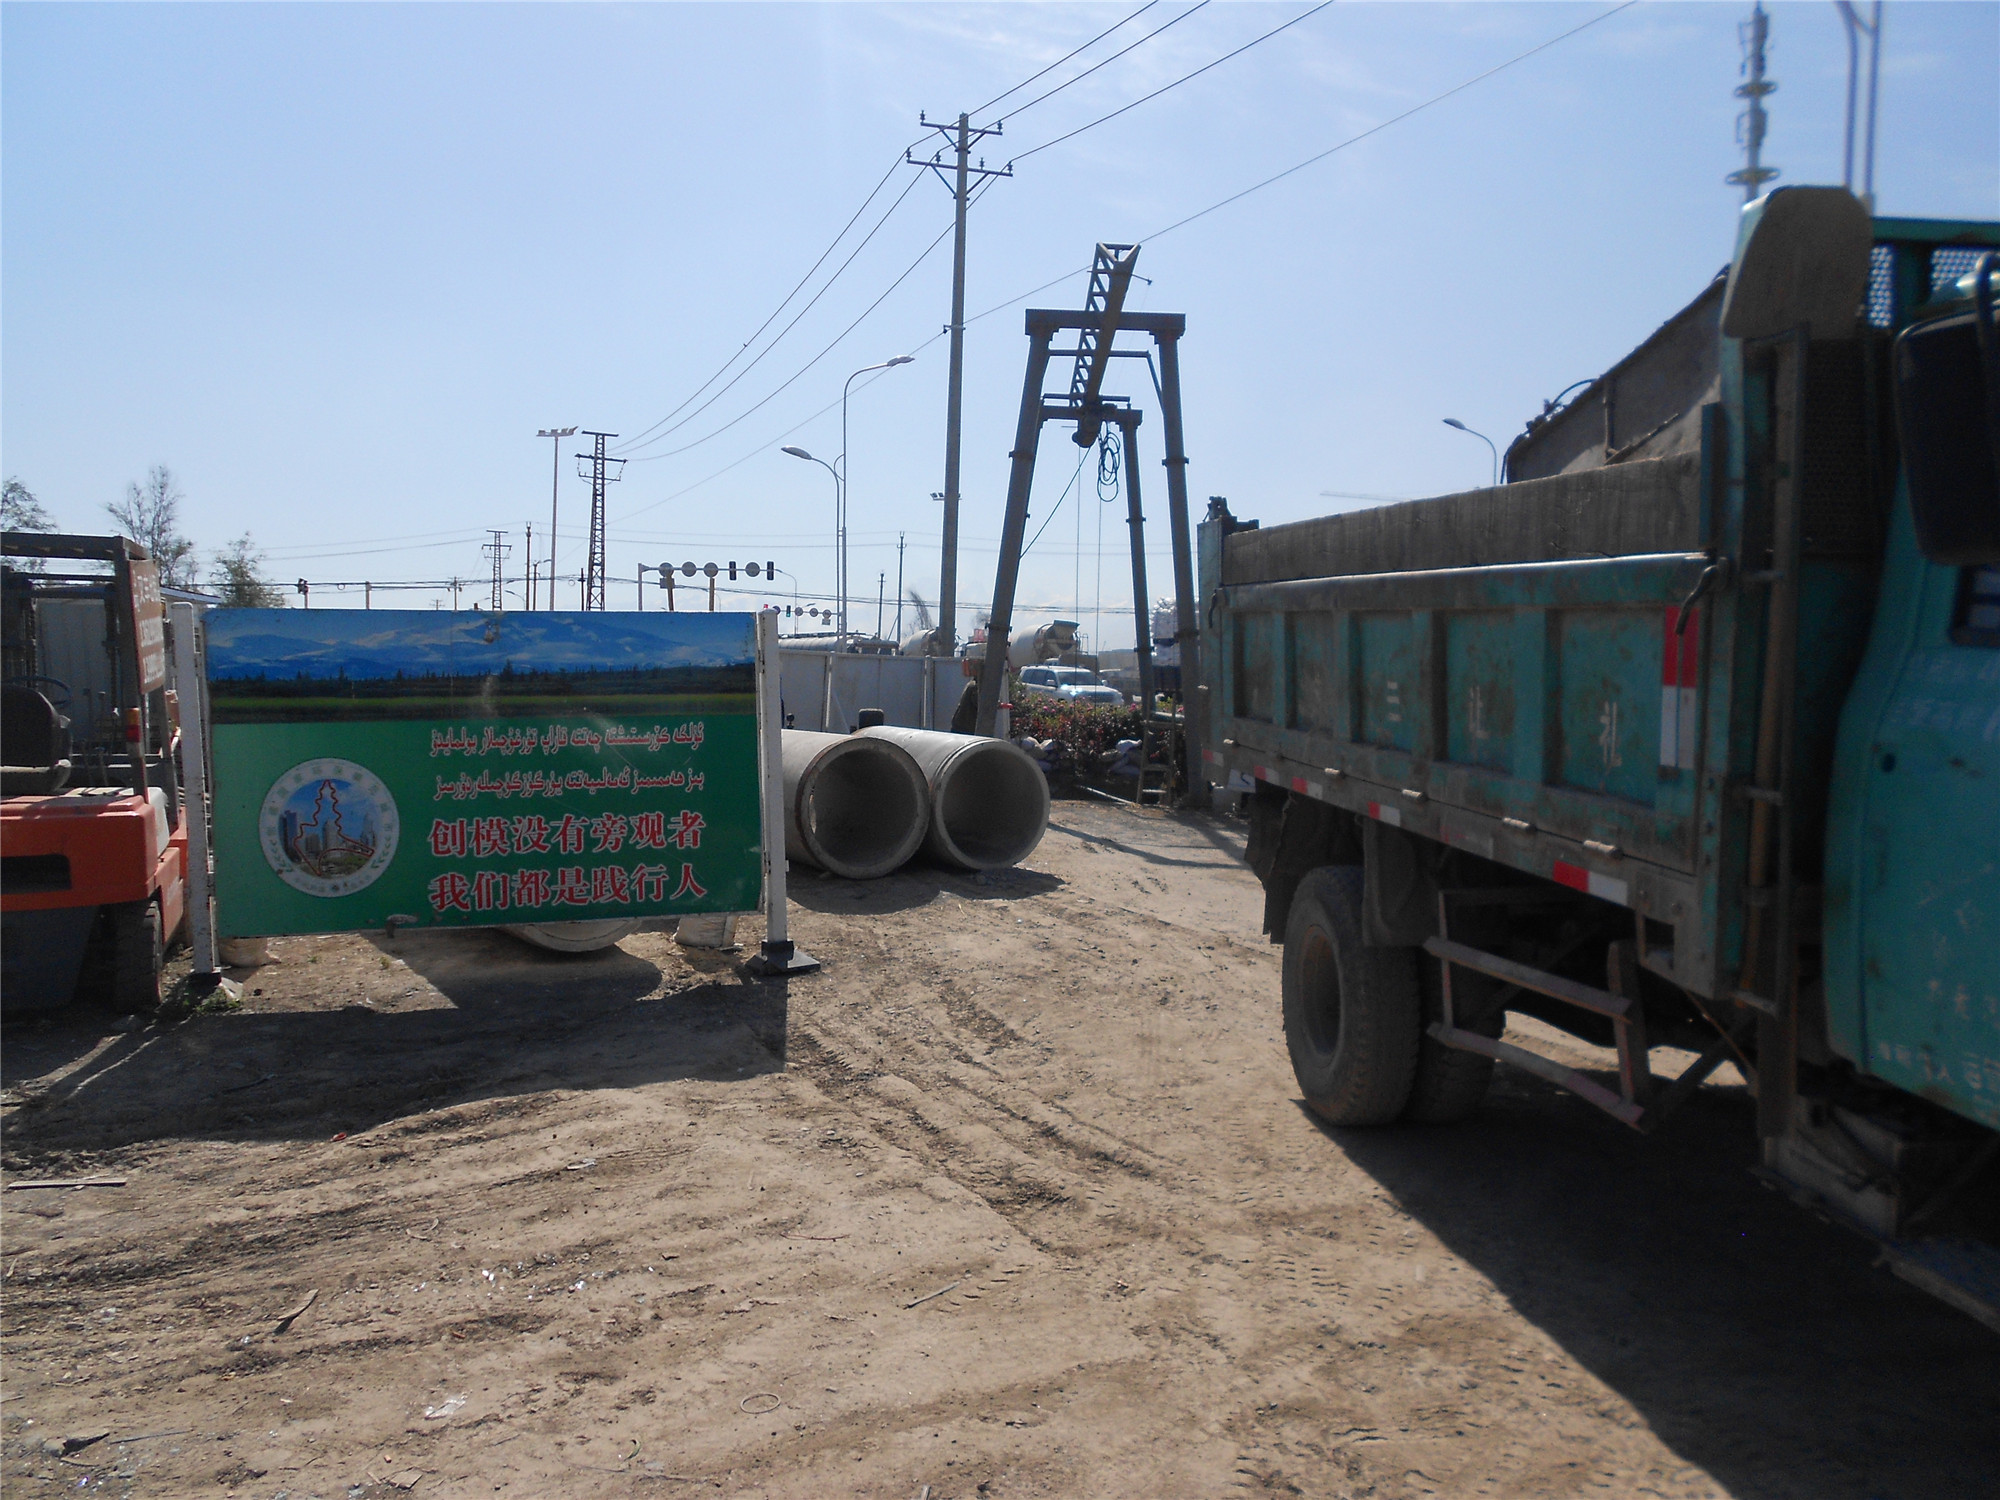 新疆顶管公司解析定向钻施工在松散砂层铺管的对策